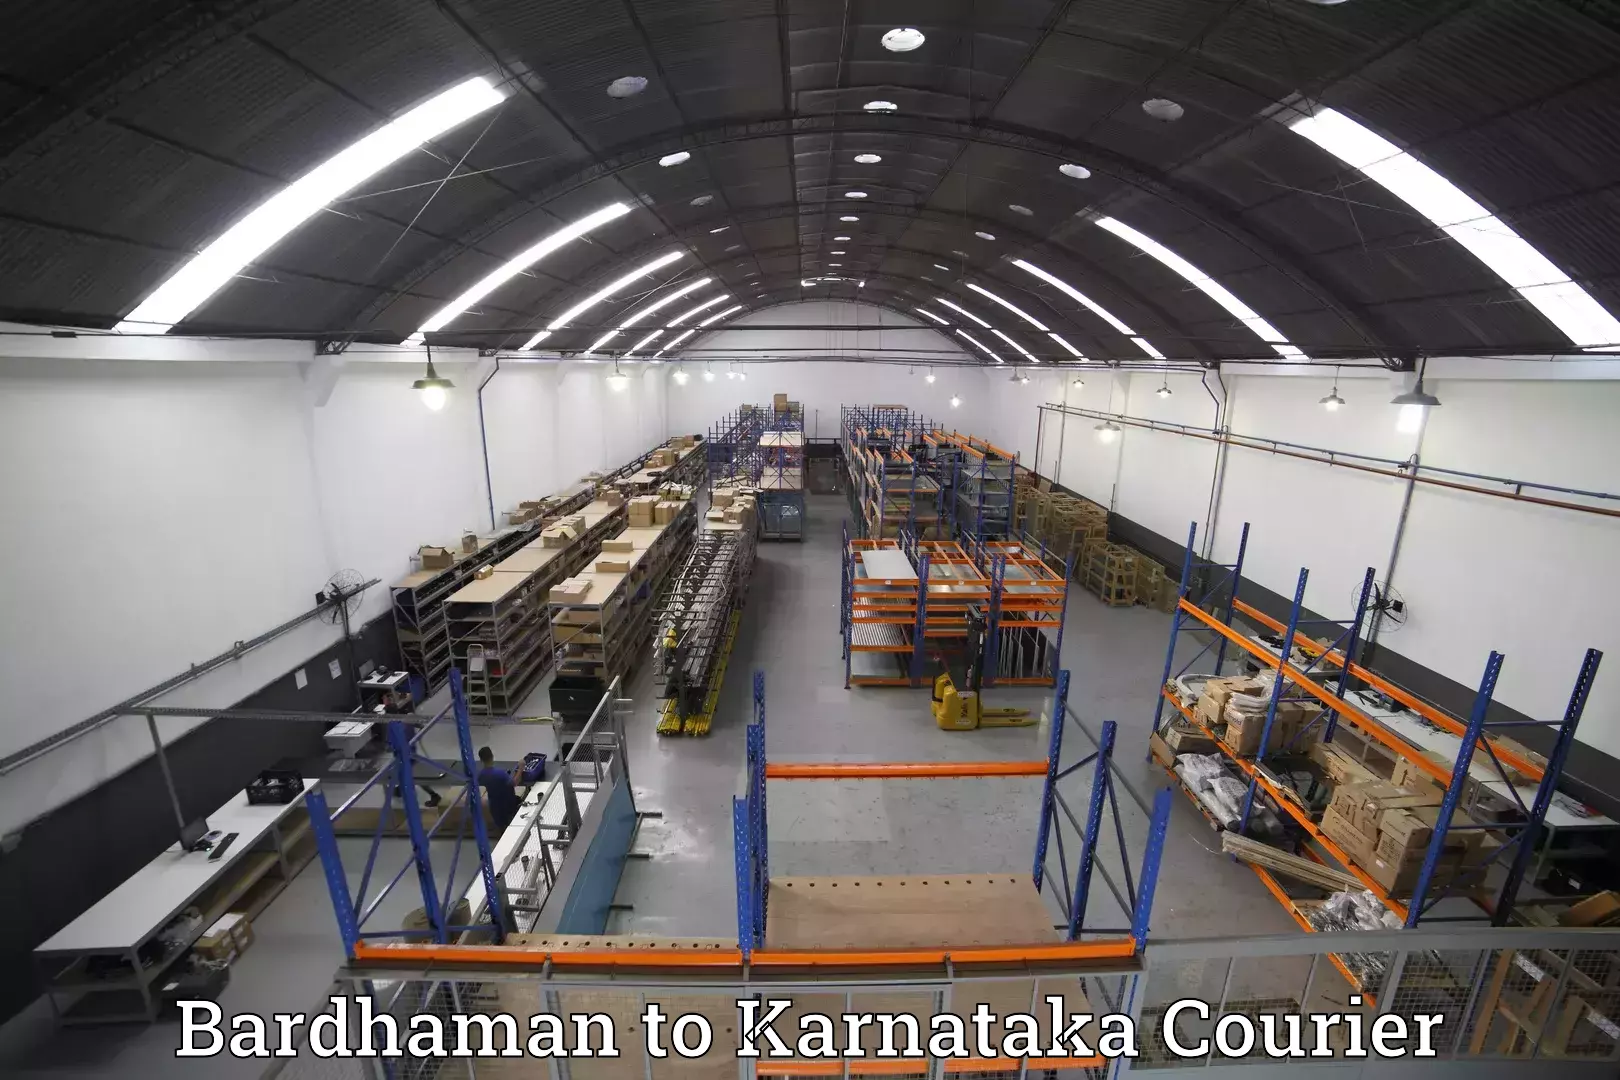 Luggage shipment tracking Bardhaman to Nelamangala